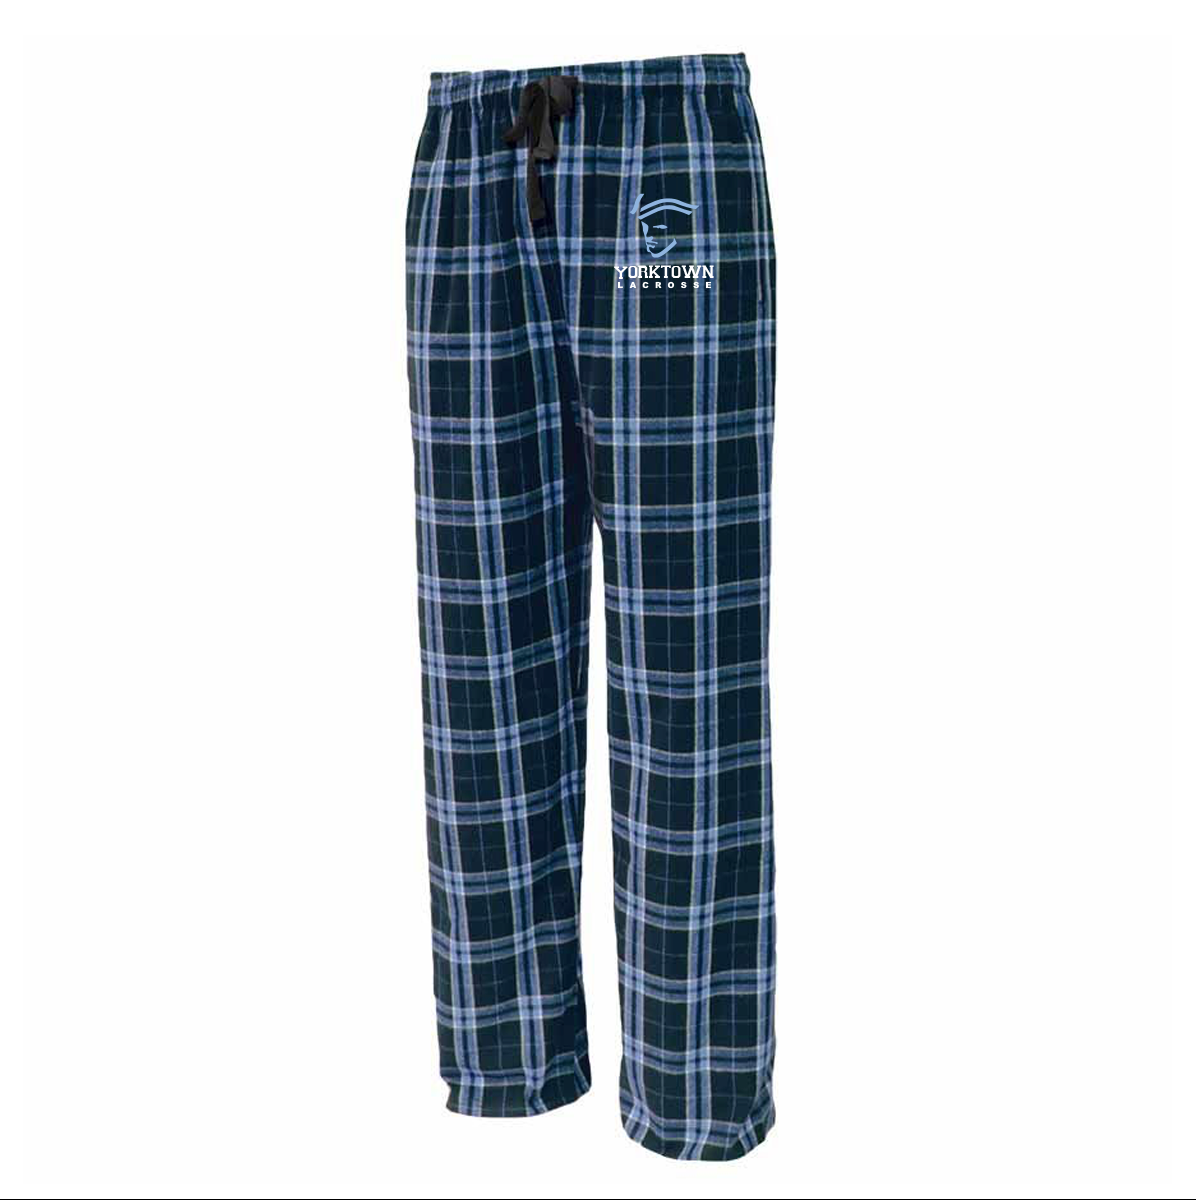 Yorktown HS Pajama Pant